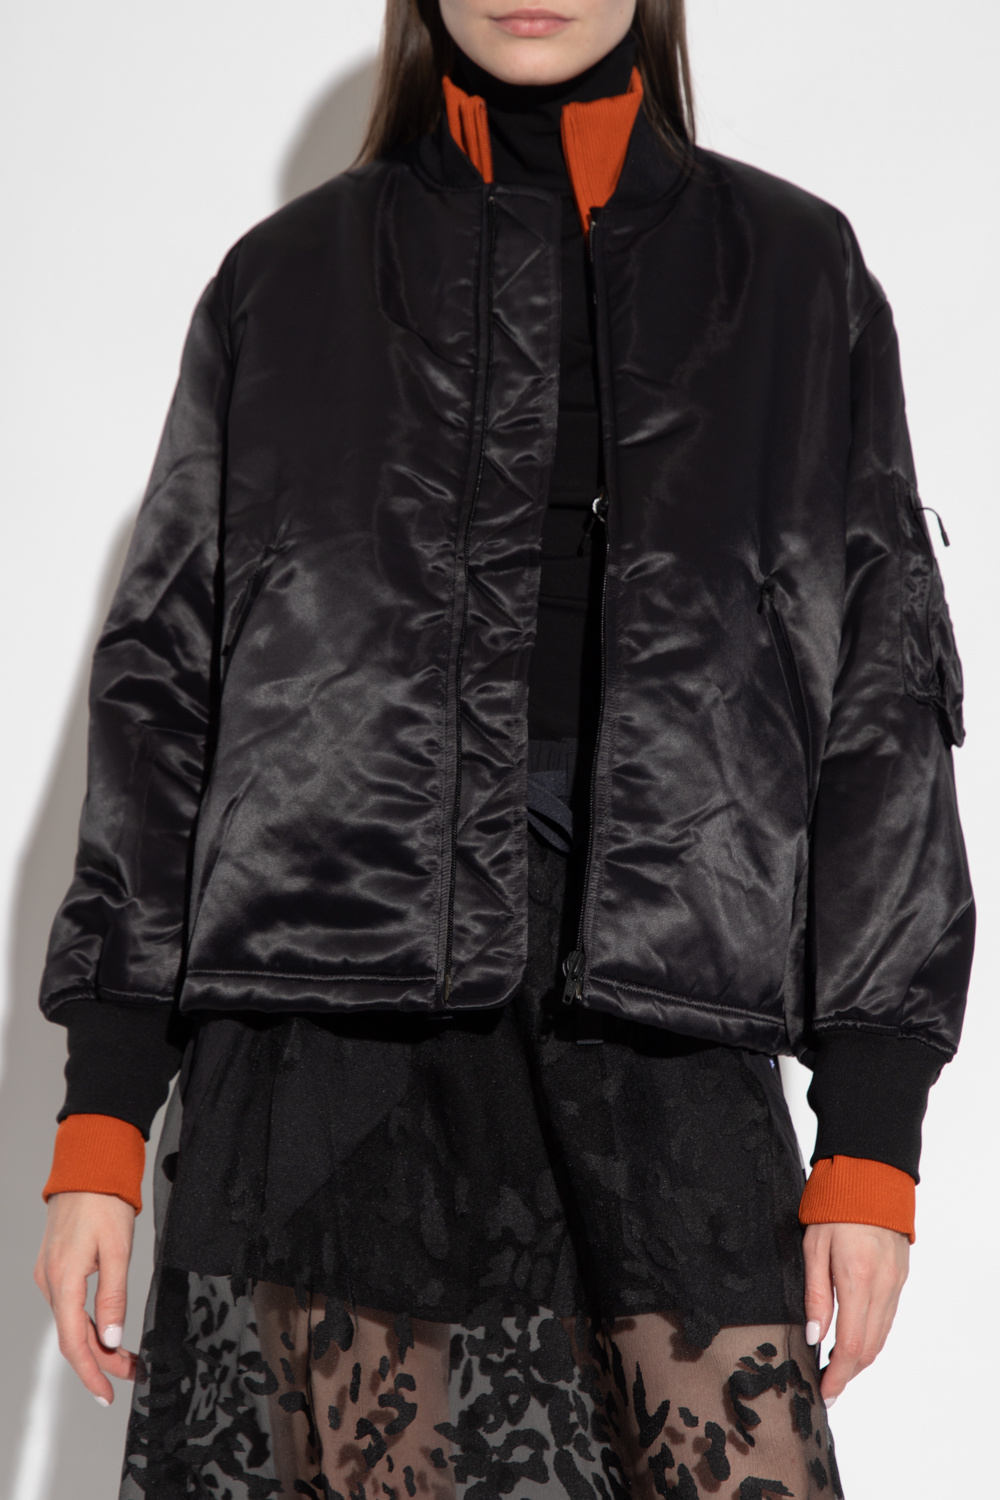 Y-3 Yohji Yamamoto logo-print jacket with logo